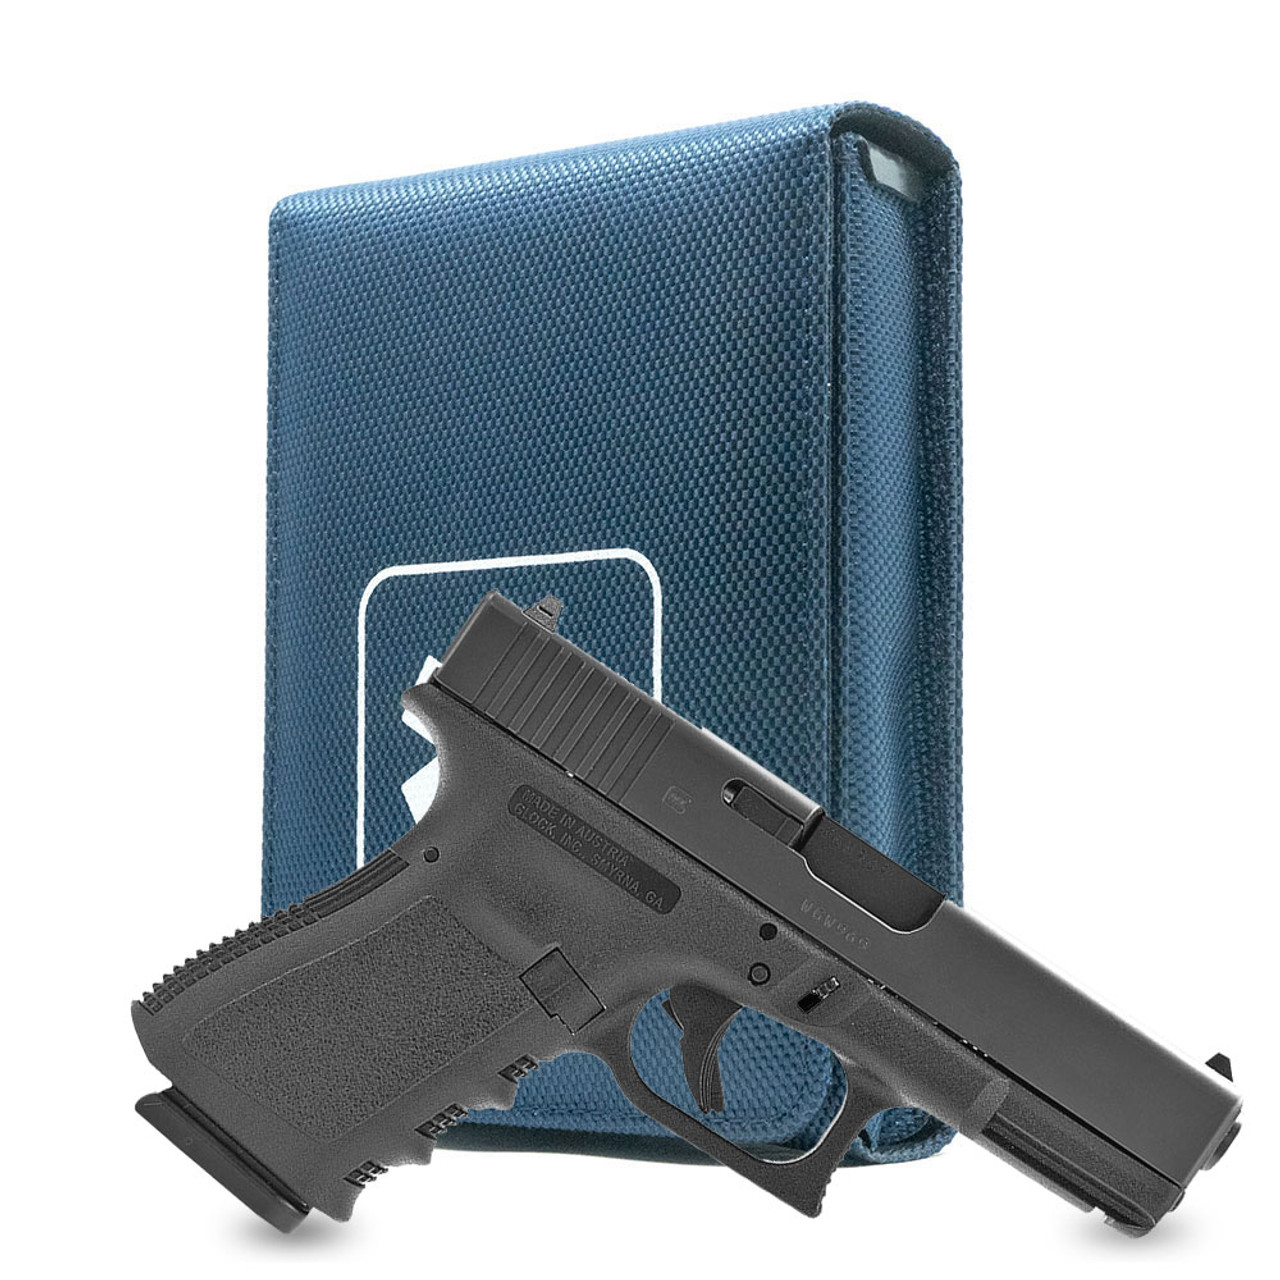 Blue Covert Series Holster for the Glock 32